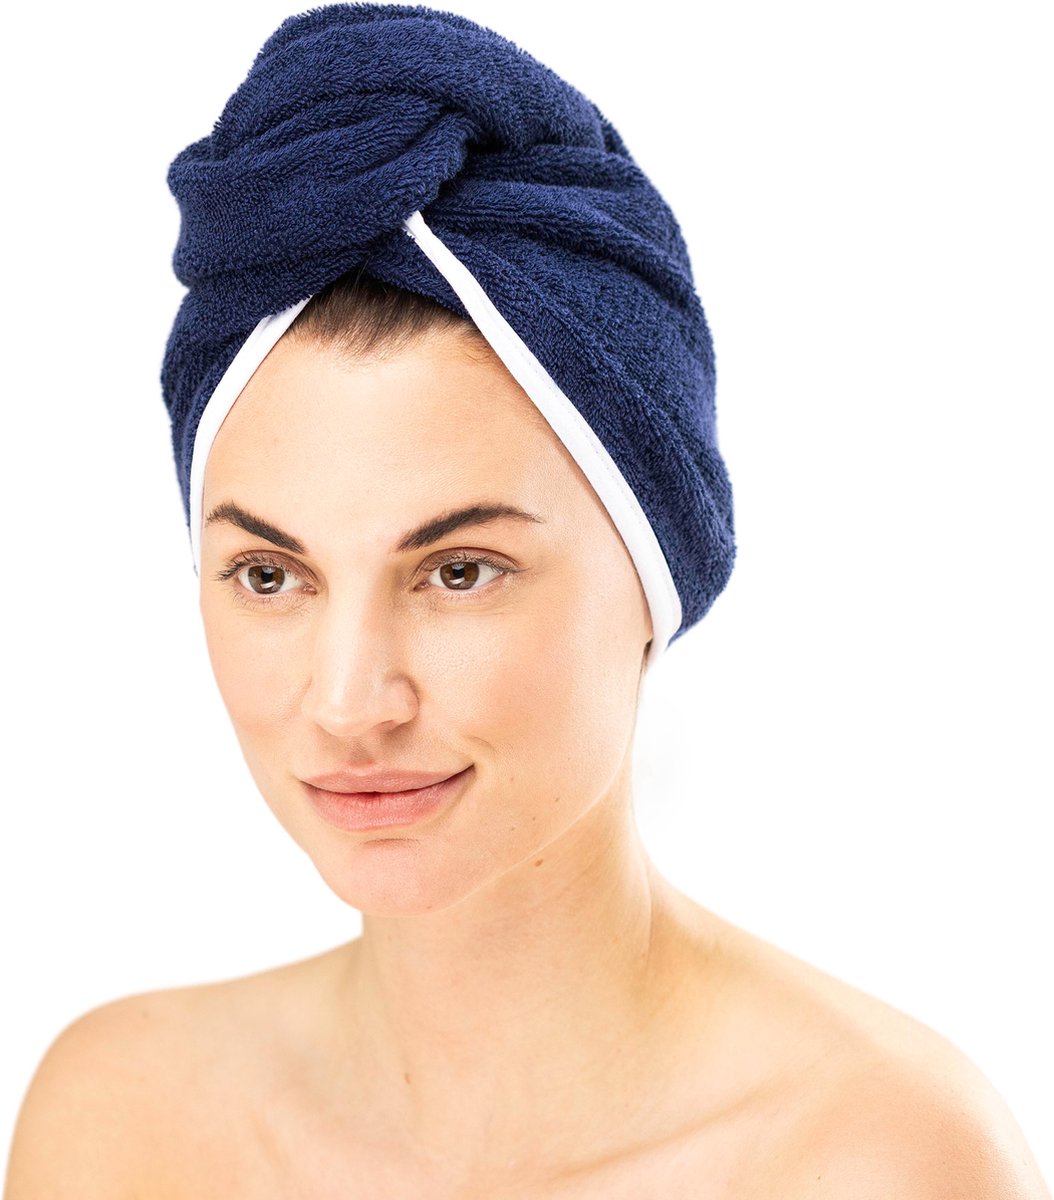 HOMELEVEL Badstof haartulband met knoop voor volwassenen gemaakt van 100% katoen, absorberend, stabiele grip - Aantal 2 - Donkerblauw